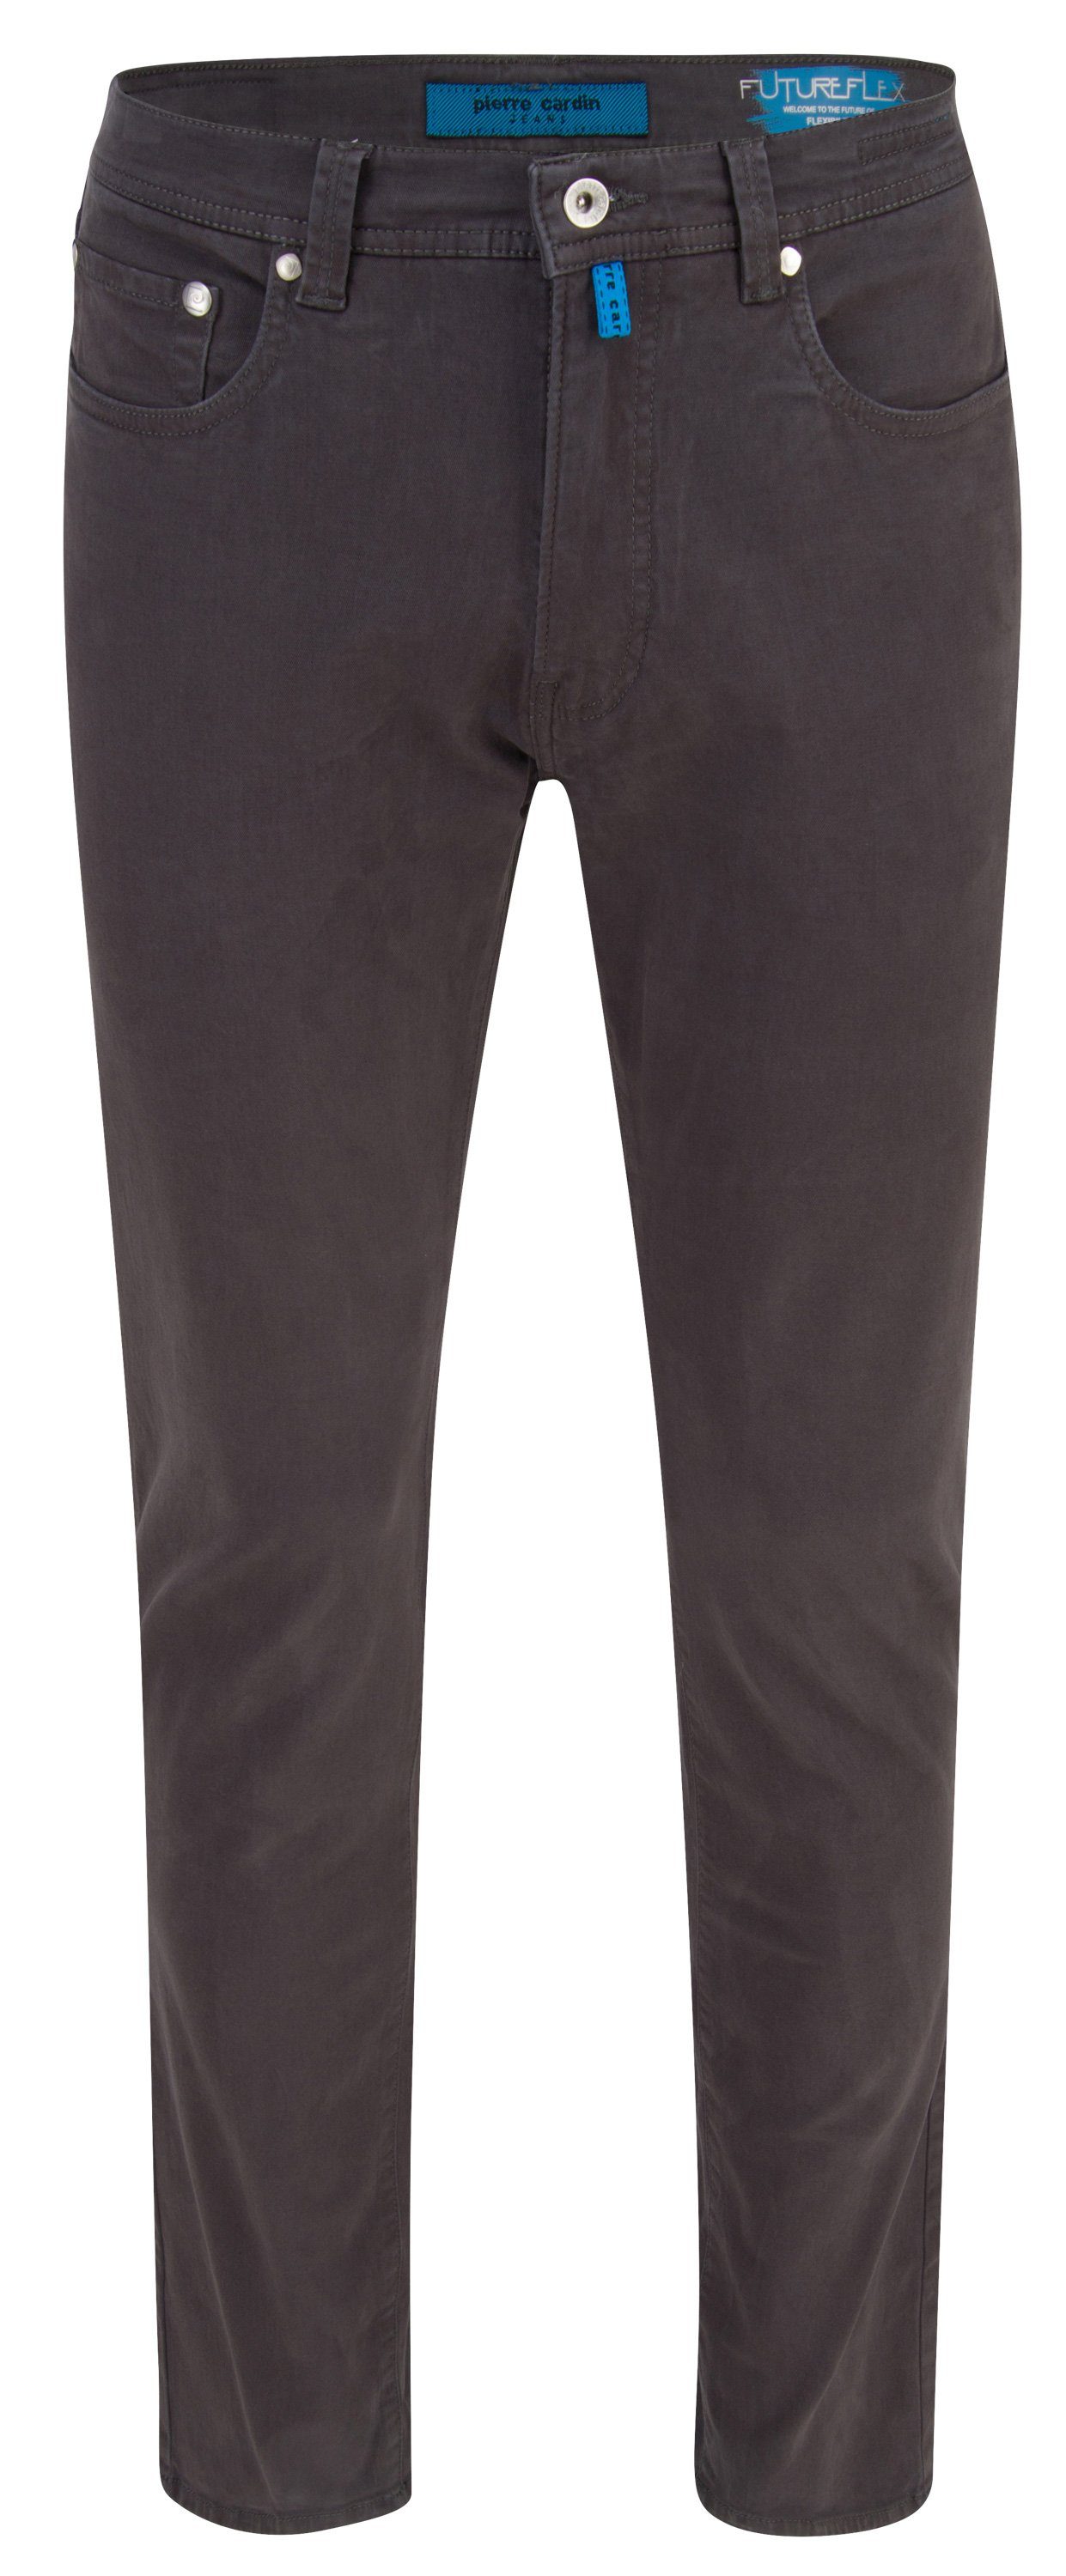 Pierre FUTUREFLEX 3451 5-Pocket-Jeans CARDIN LYON grey 2233.85 PIERRE Cardin